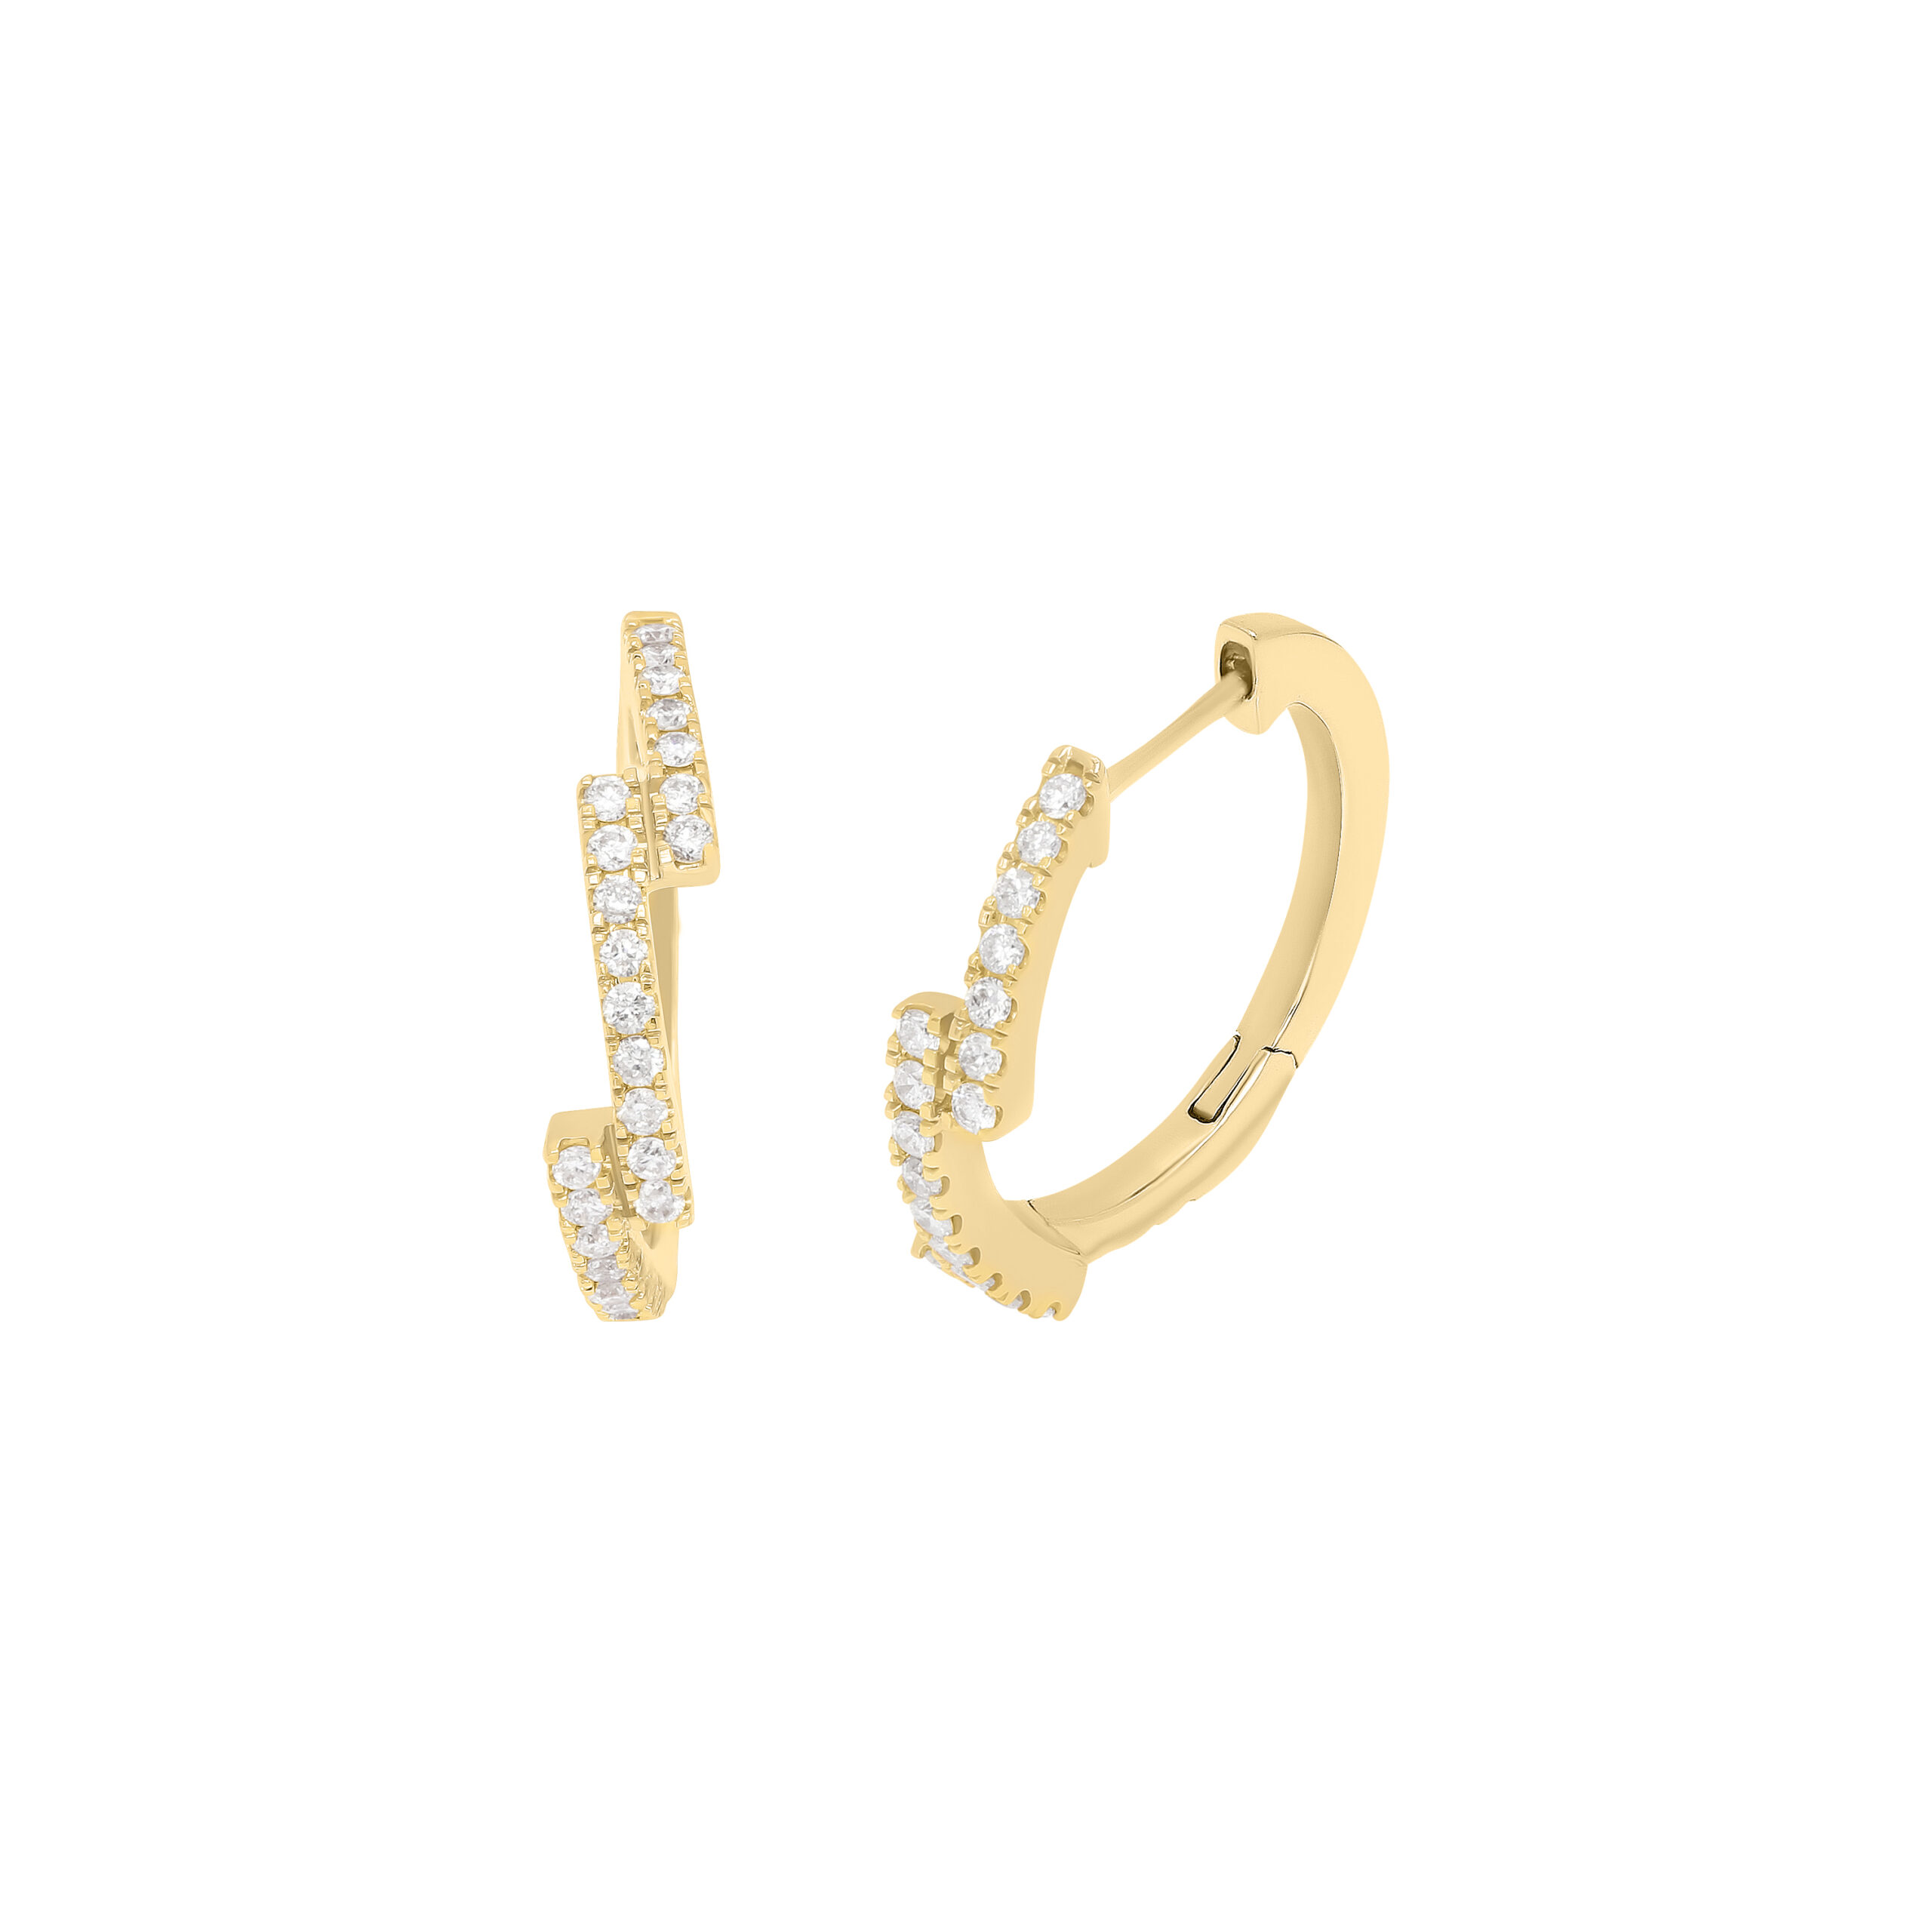 Ce bracelet fin et tendance en or blanc et lignes de diamants à superposer ou à accumuler est prisé par les stars et célébrités. Ce bijou de joaillerie fine fabriqué en France est un cadeau idéal pour l'anniversaire d'une femme.